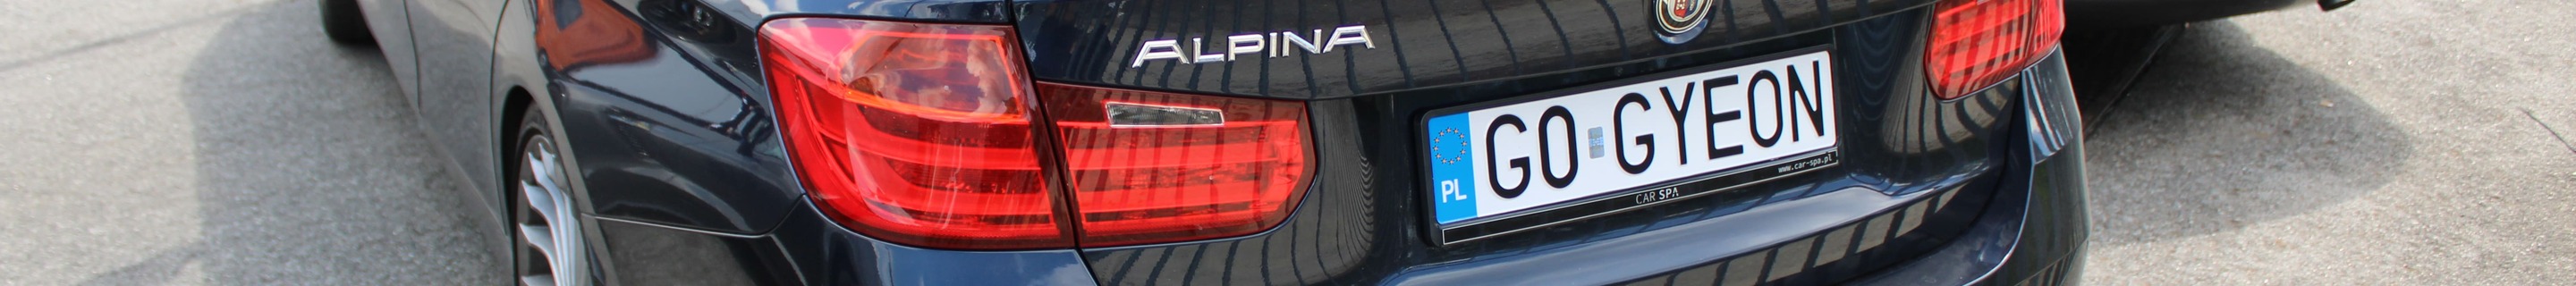 Alpina D3 BiTurbo Touring 2013